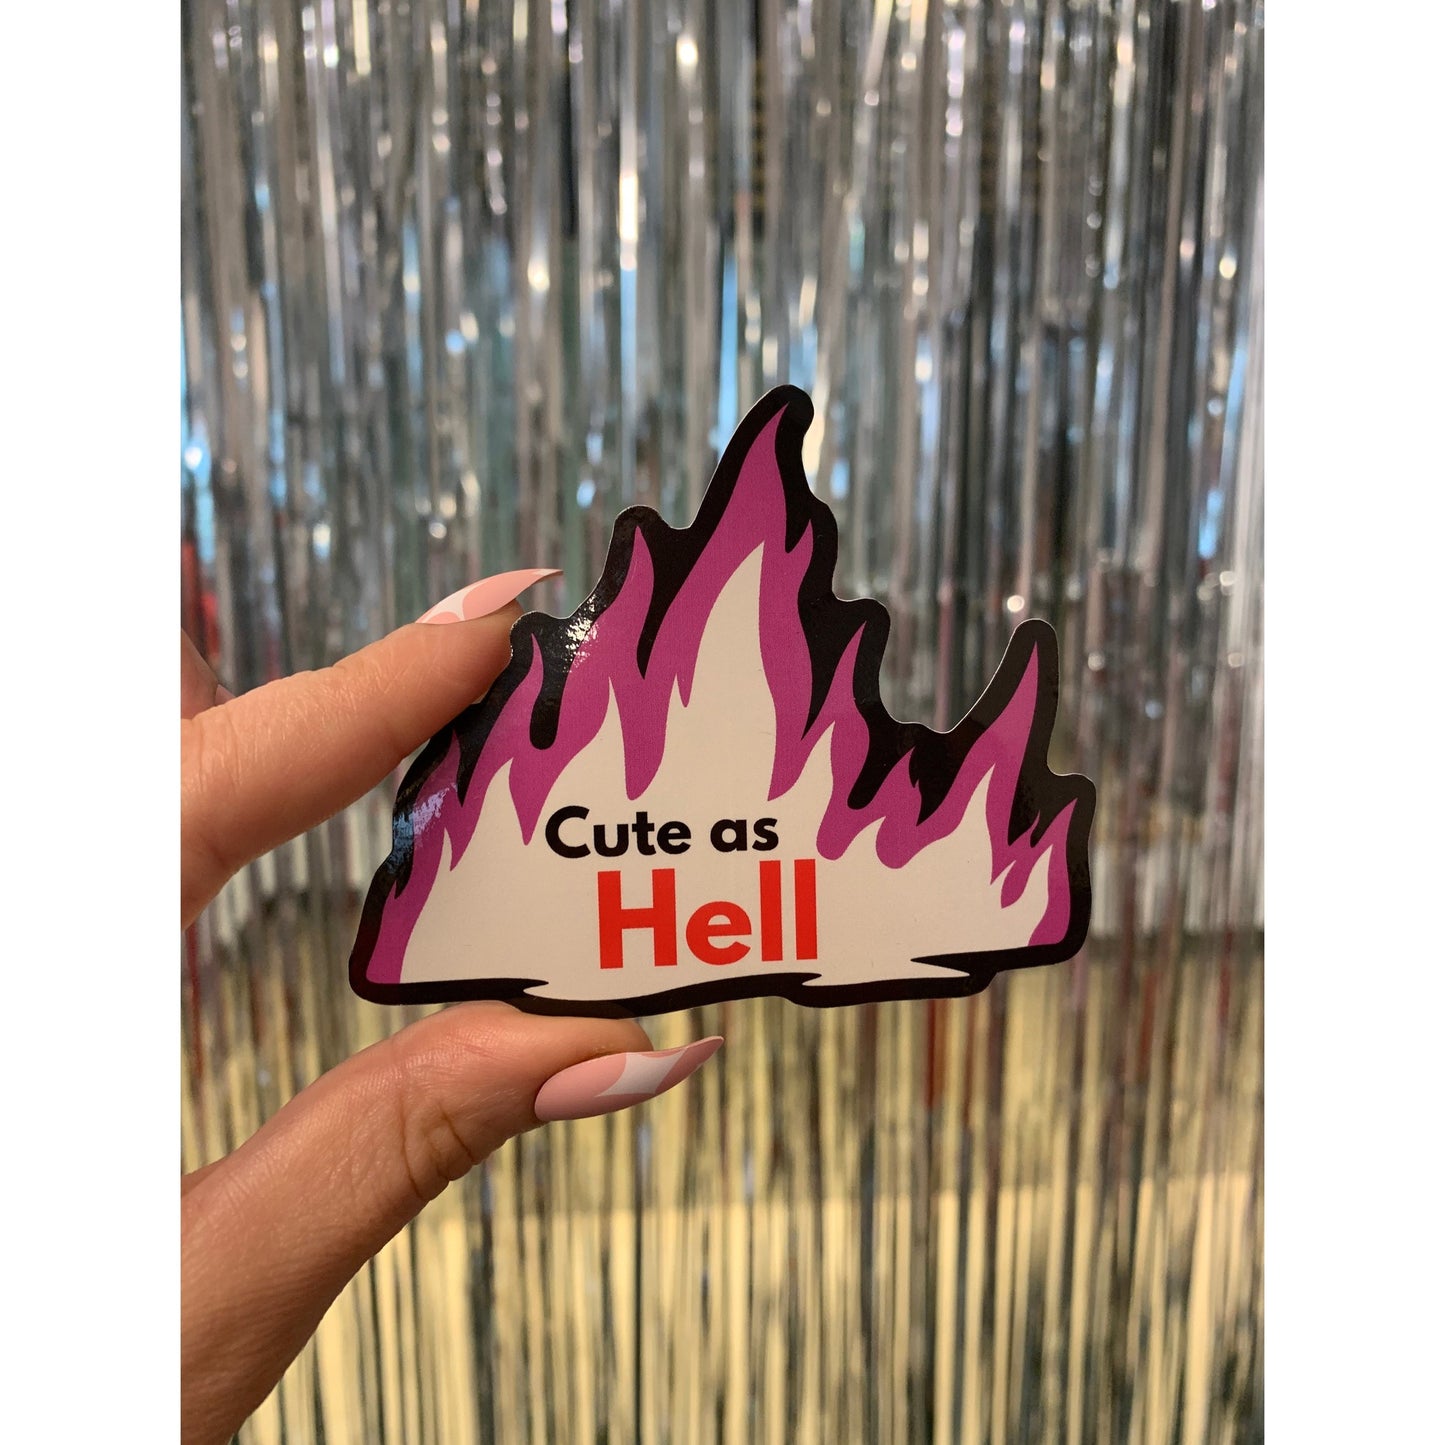 Cute As Hell | Vinyl Die Cut Sticker